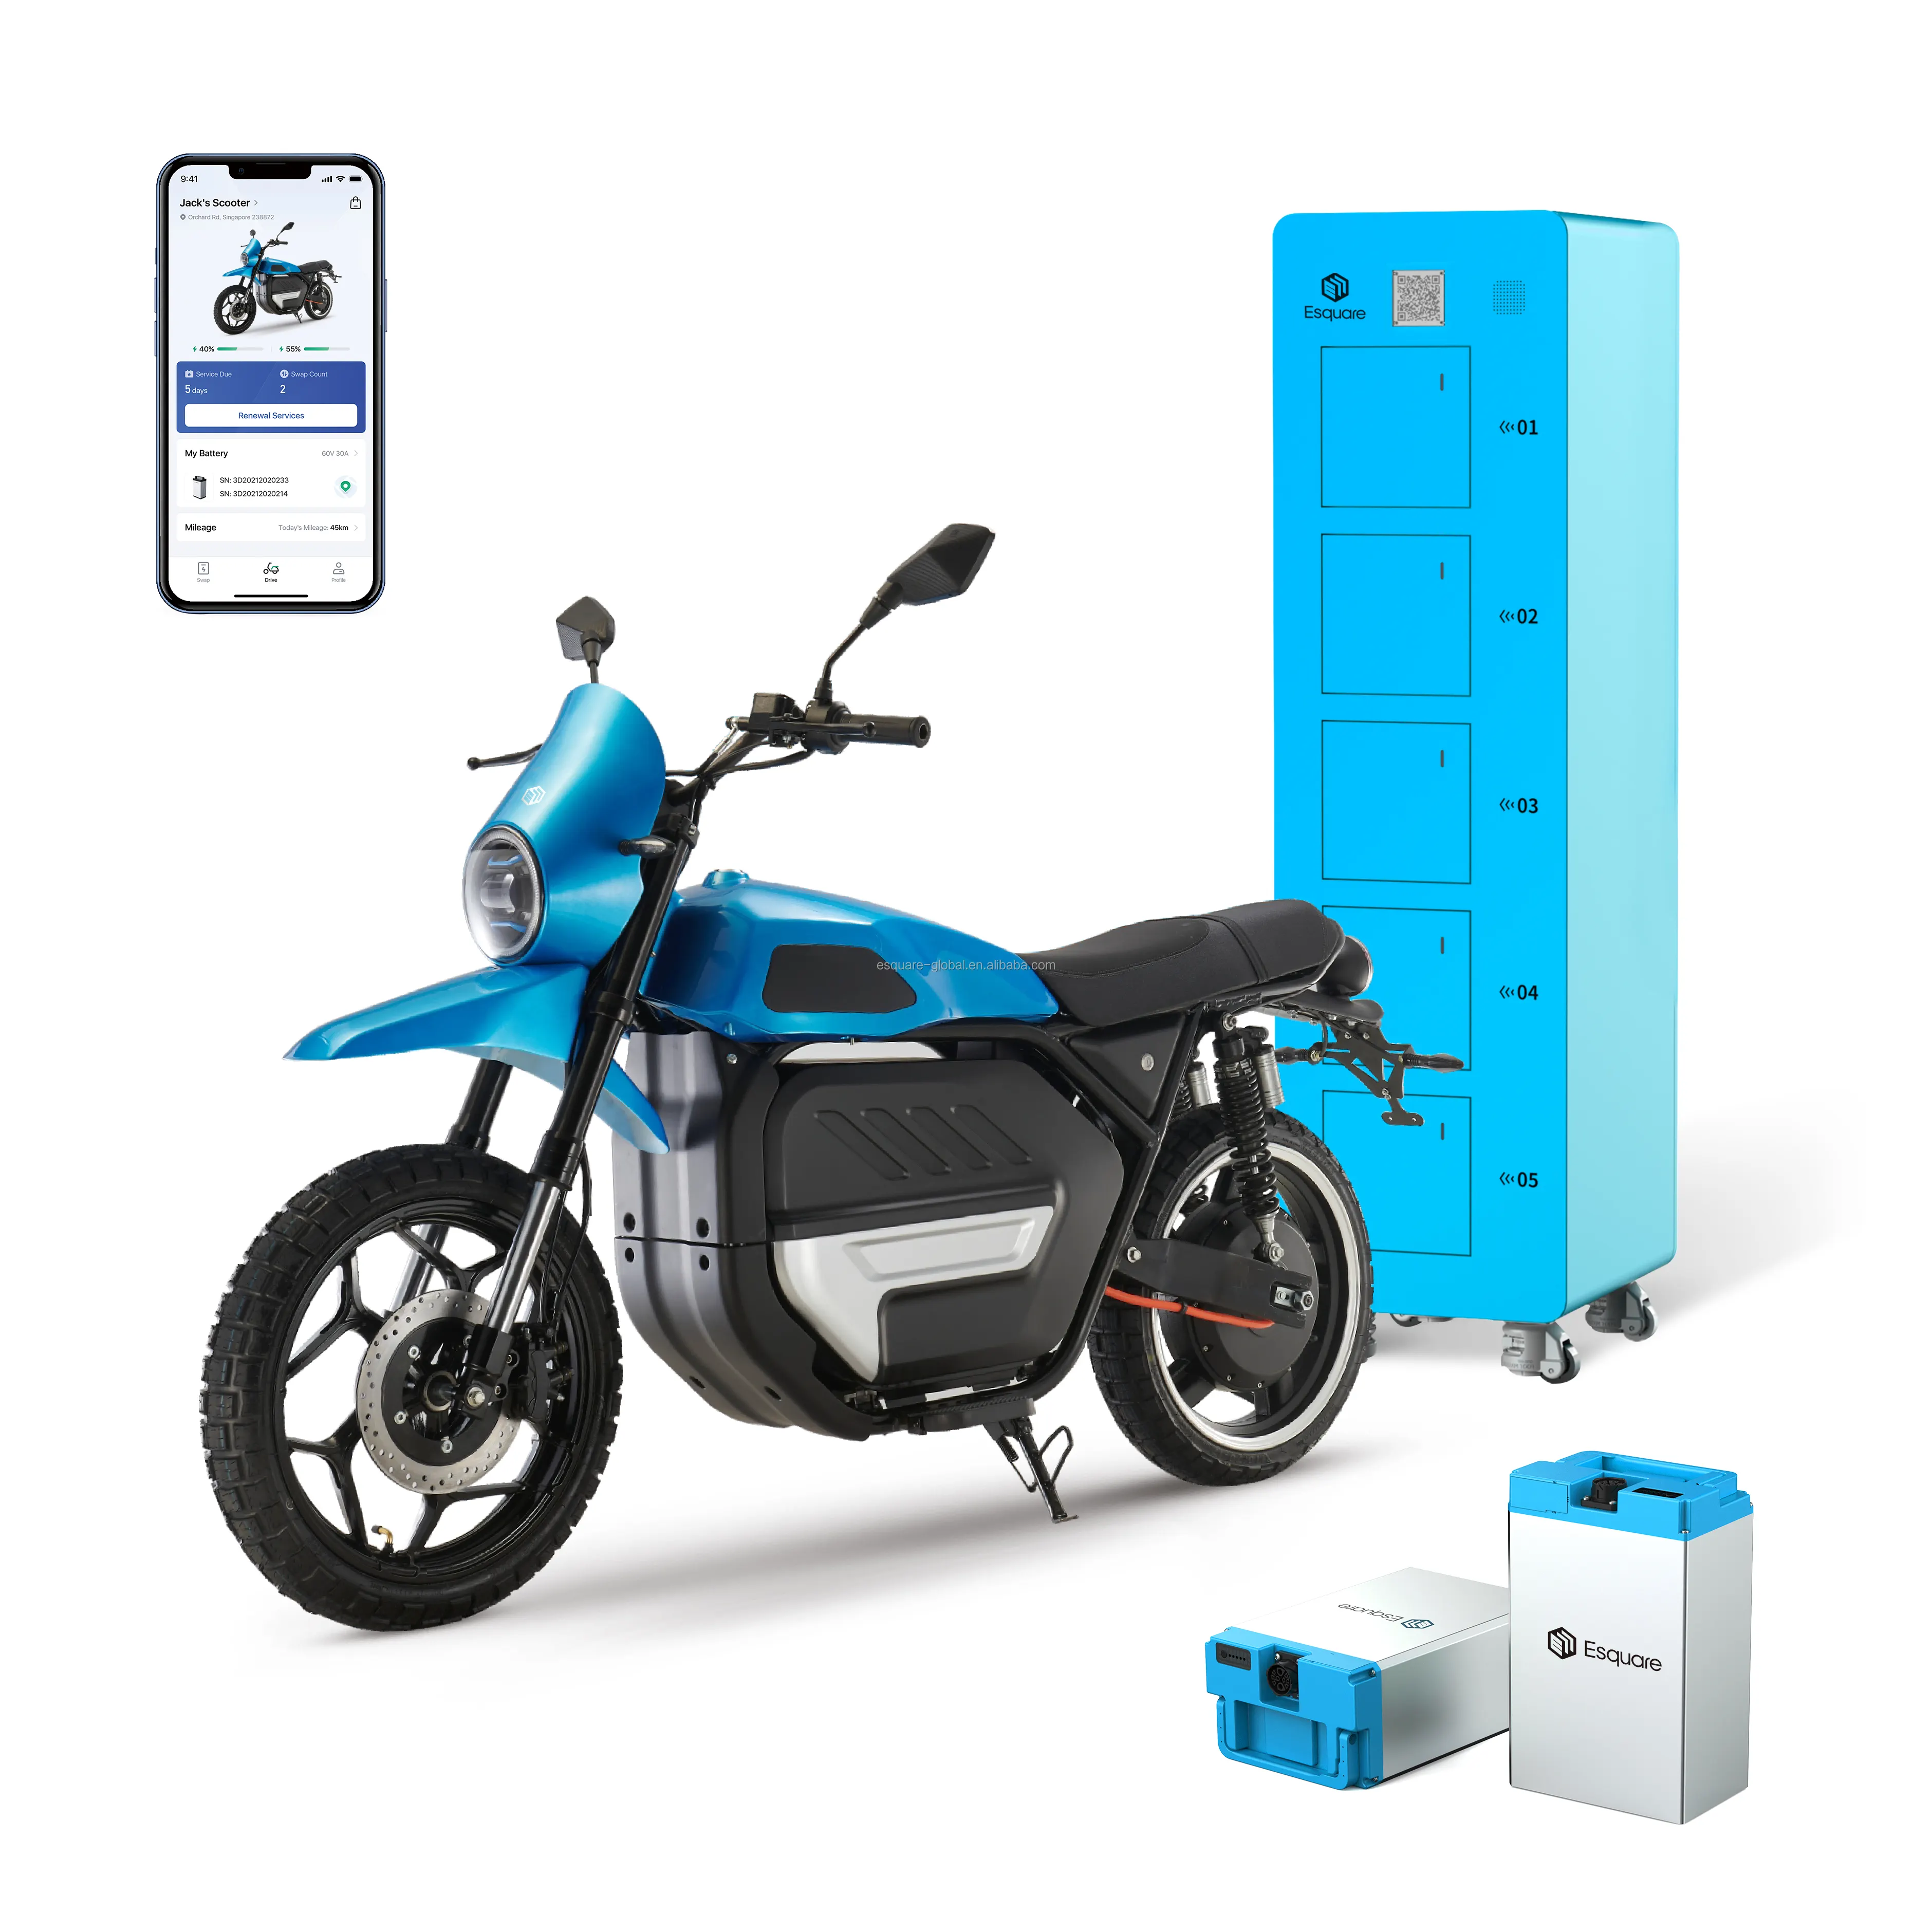 Bateria troca estação motocicleta carregador bateria One-Stop Solution for Battery Swapping Station Systems Provider